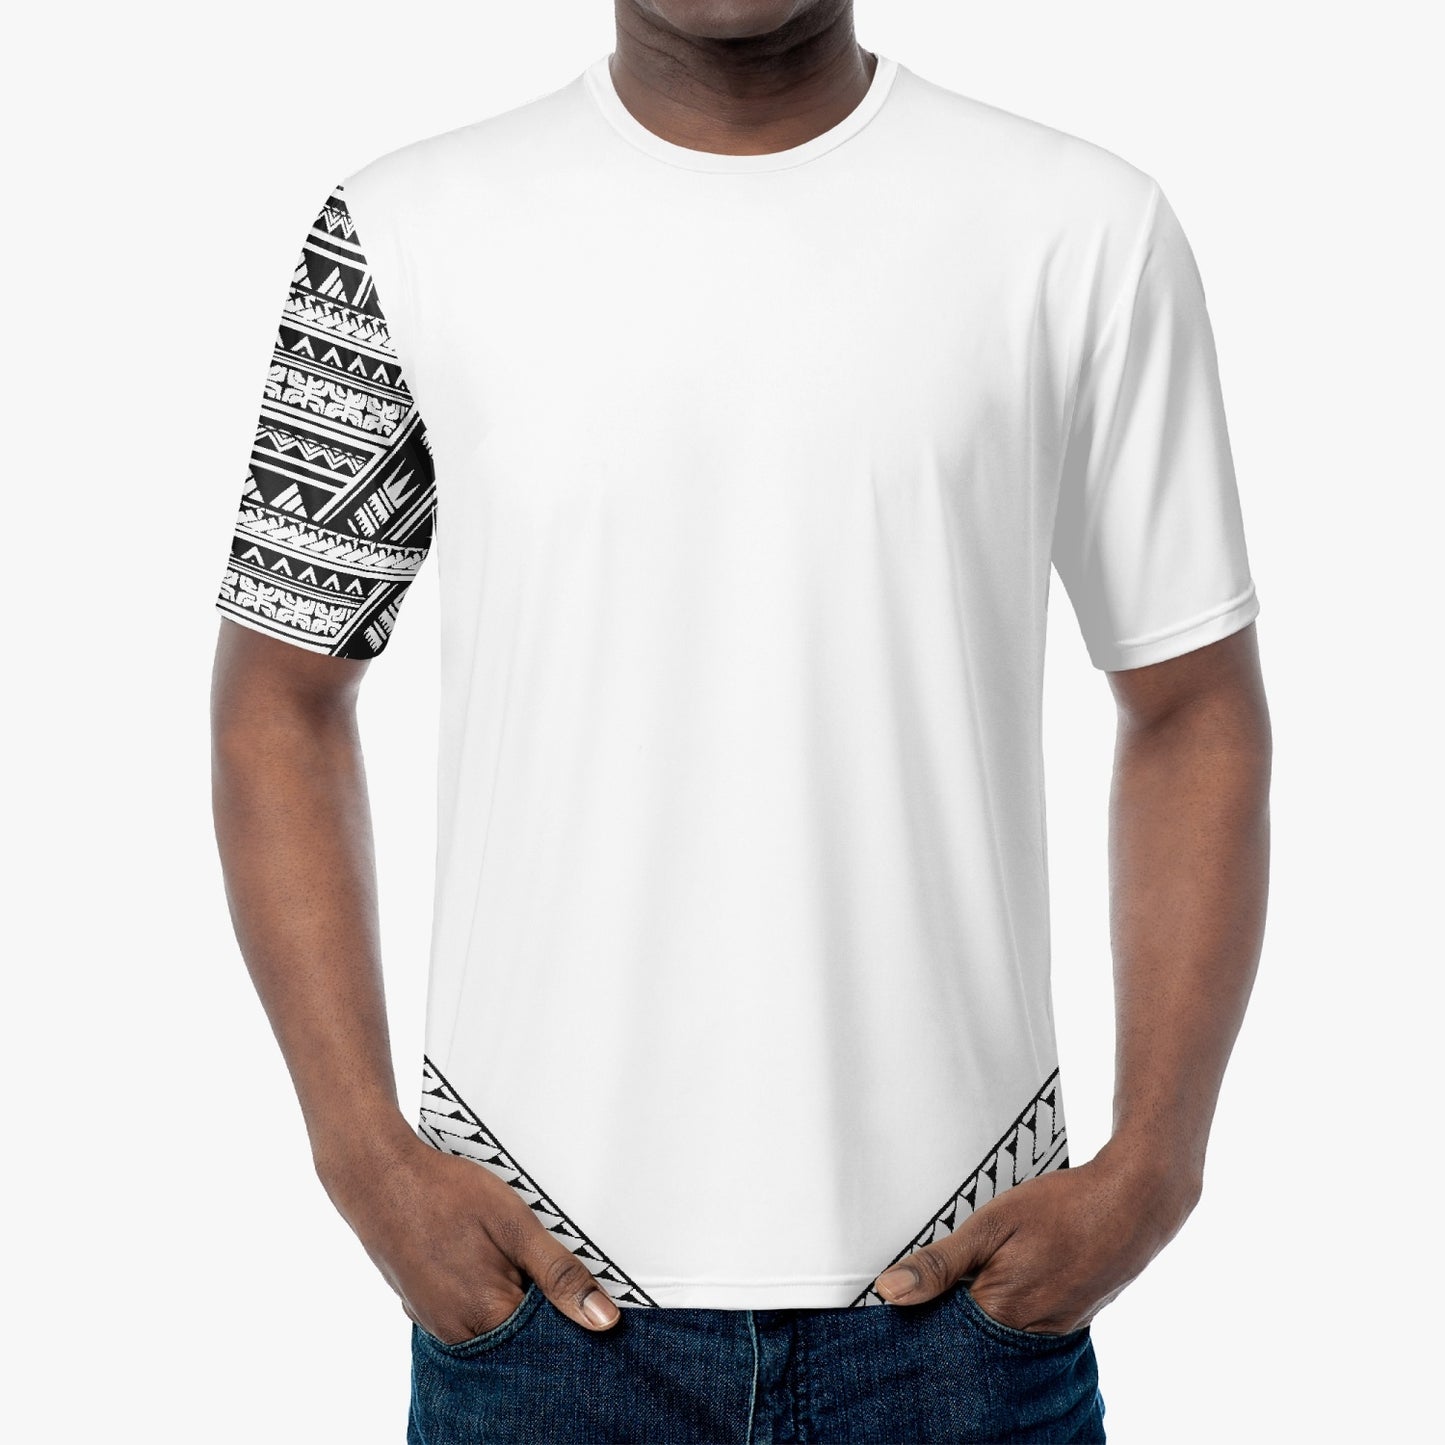 Mālofie - T-shirt